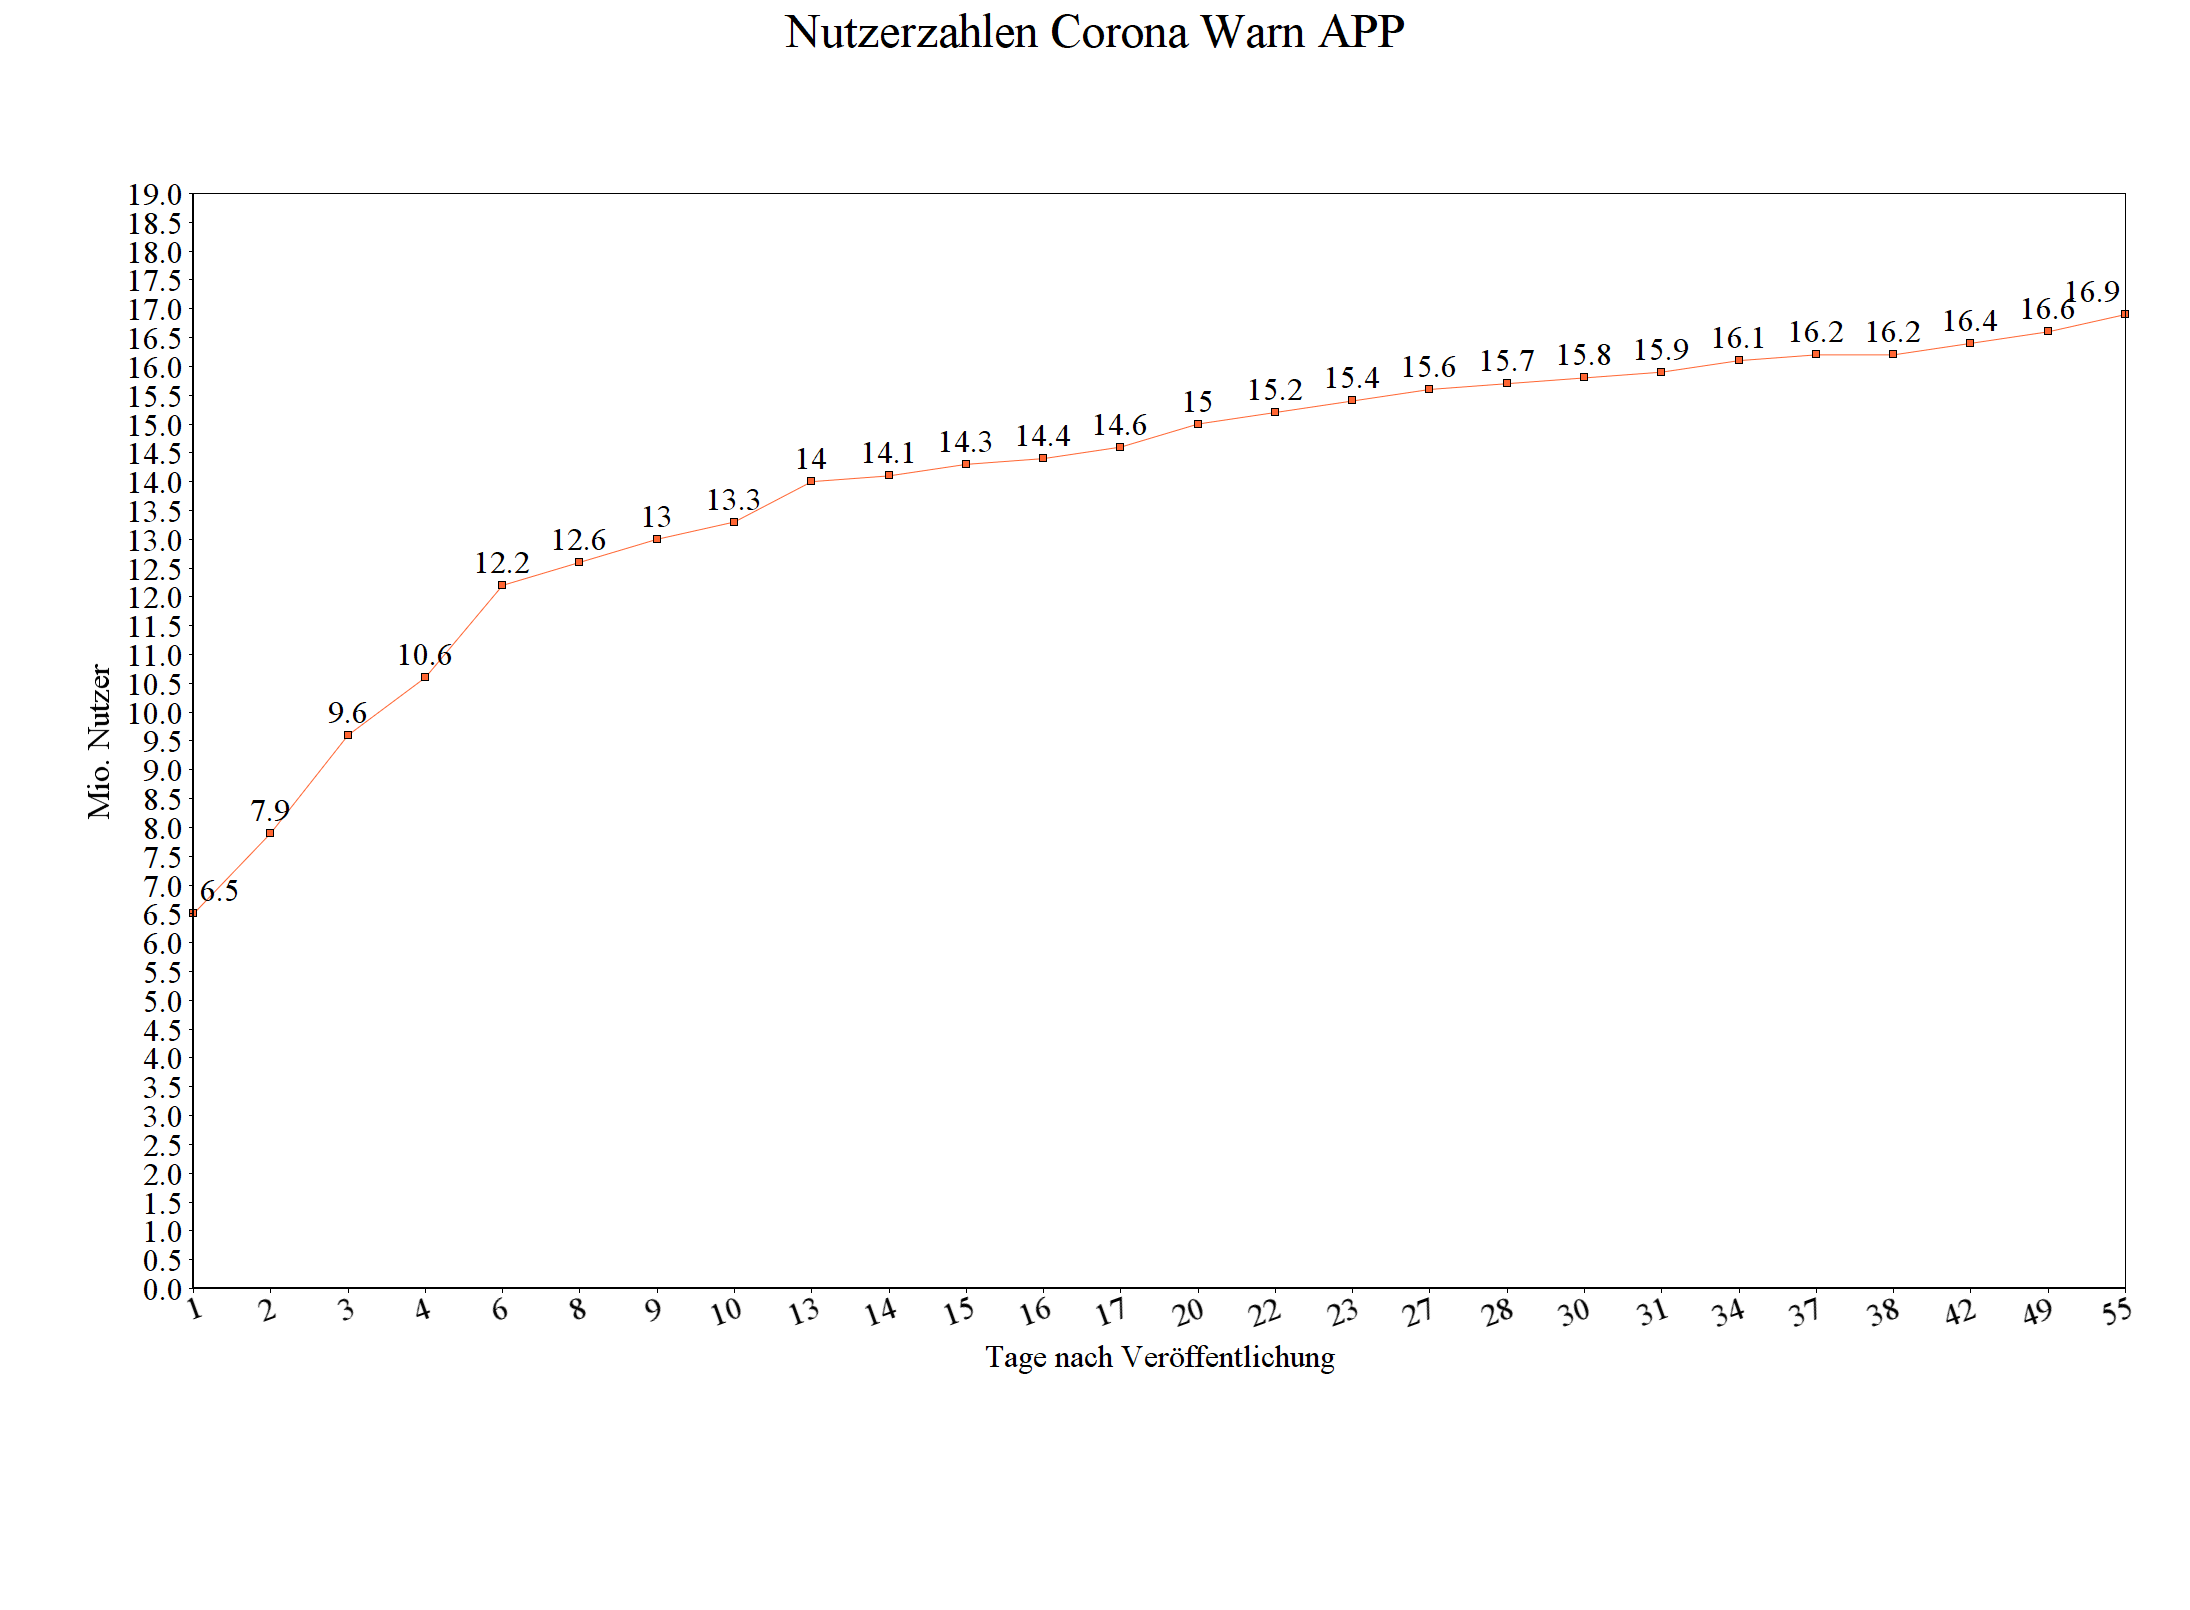 Visualisierung der Corona Nutzerzahlen